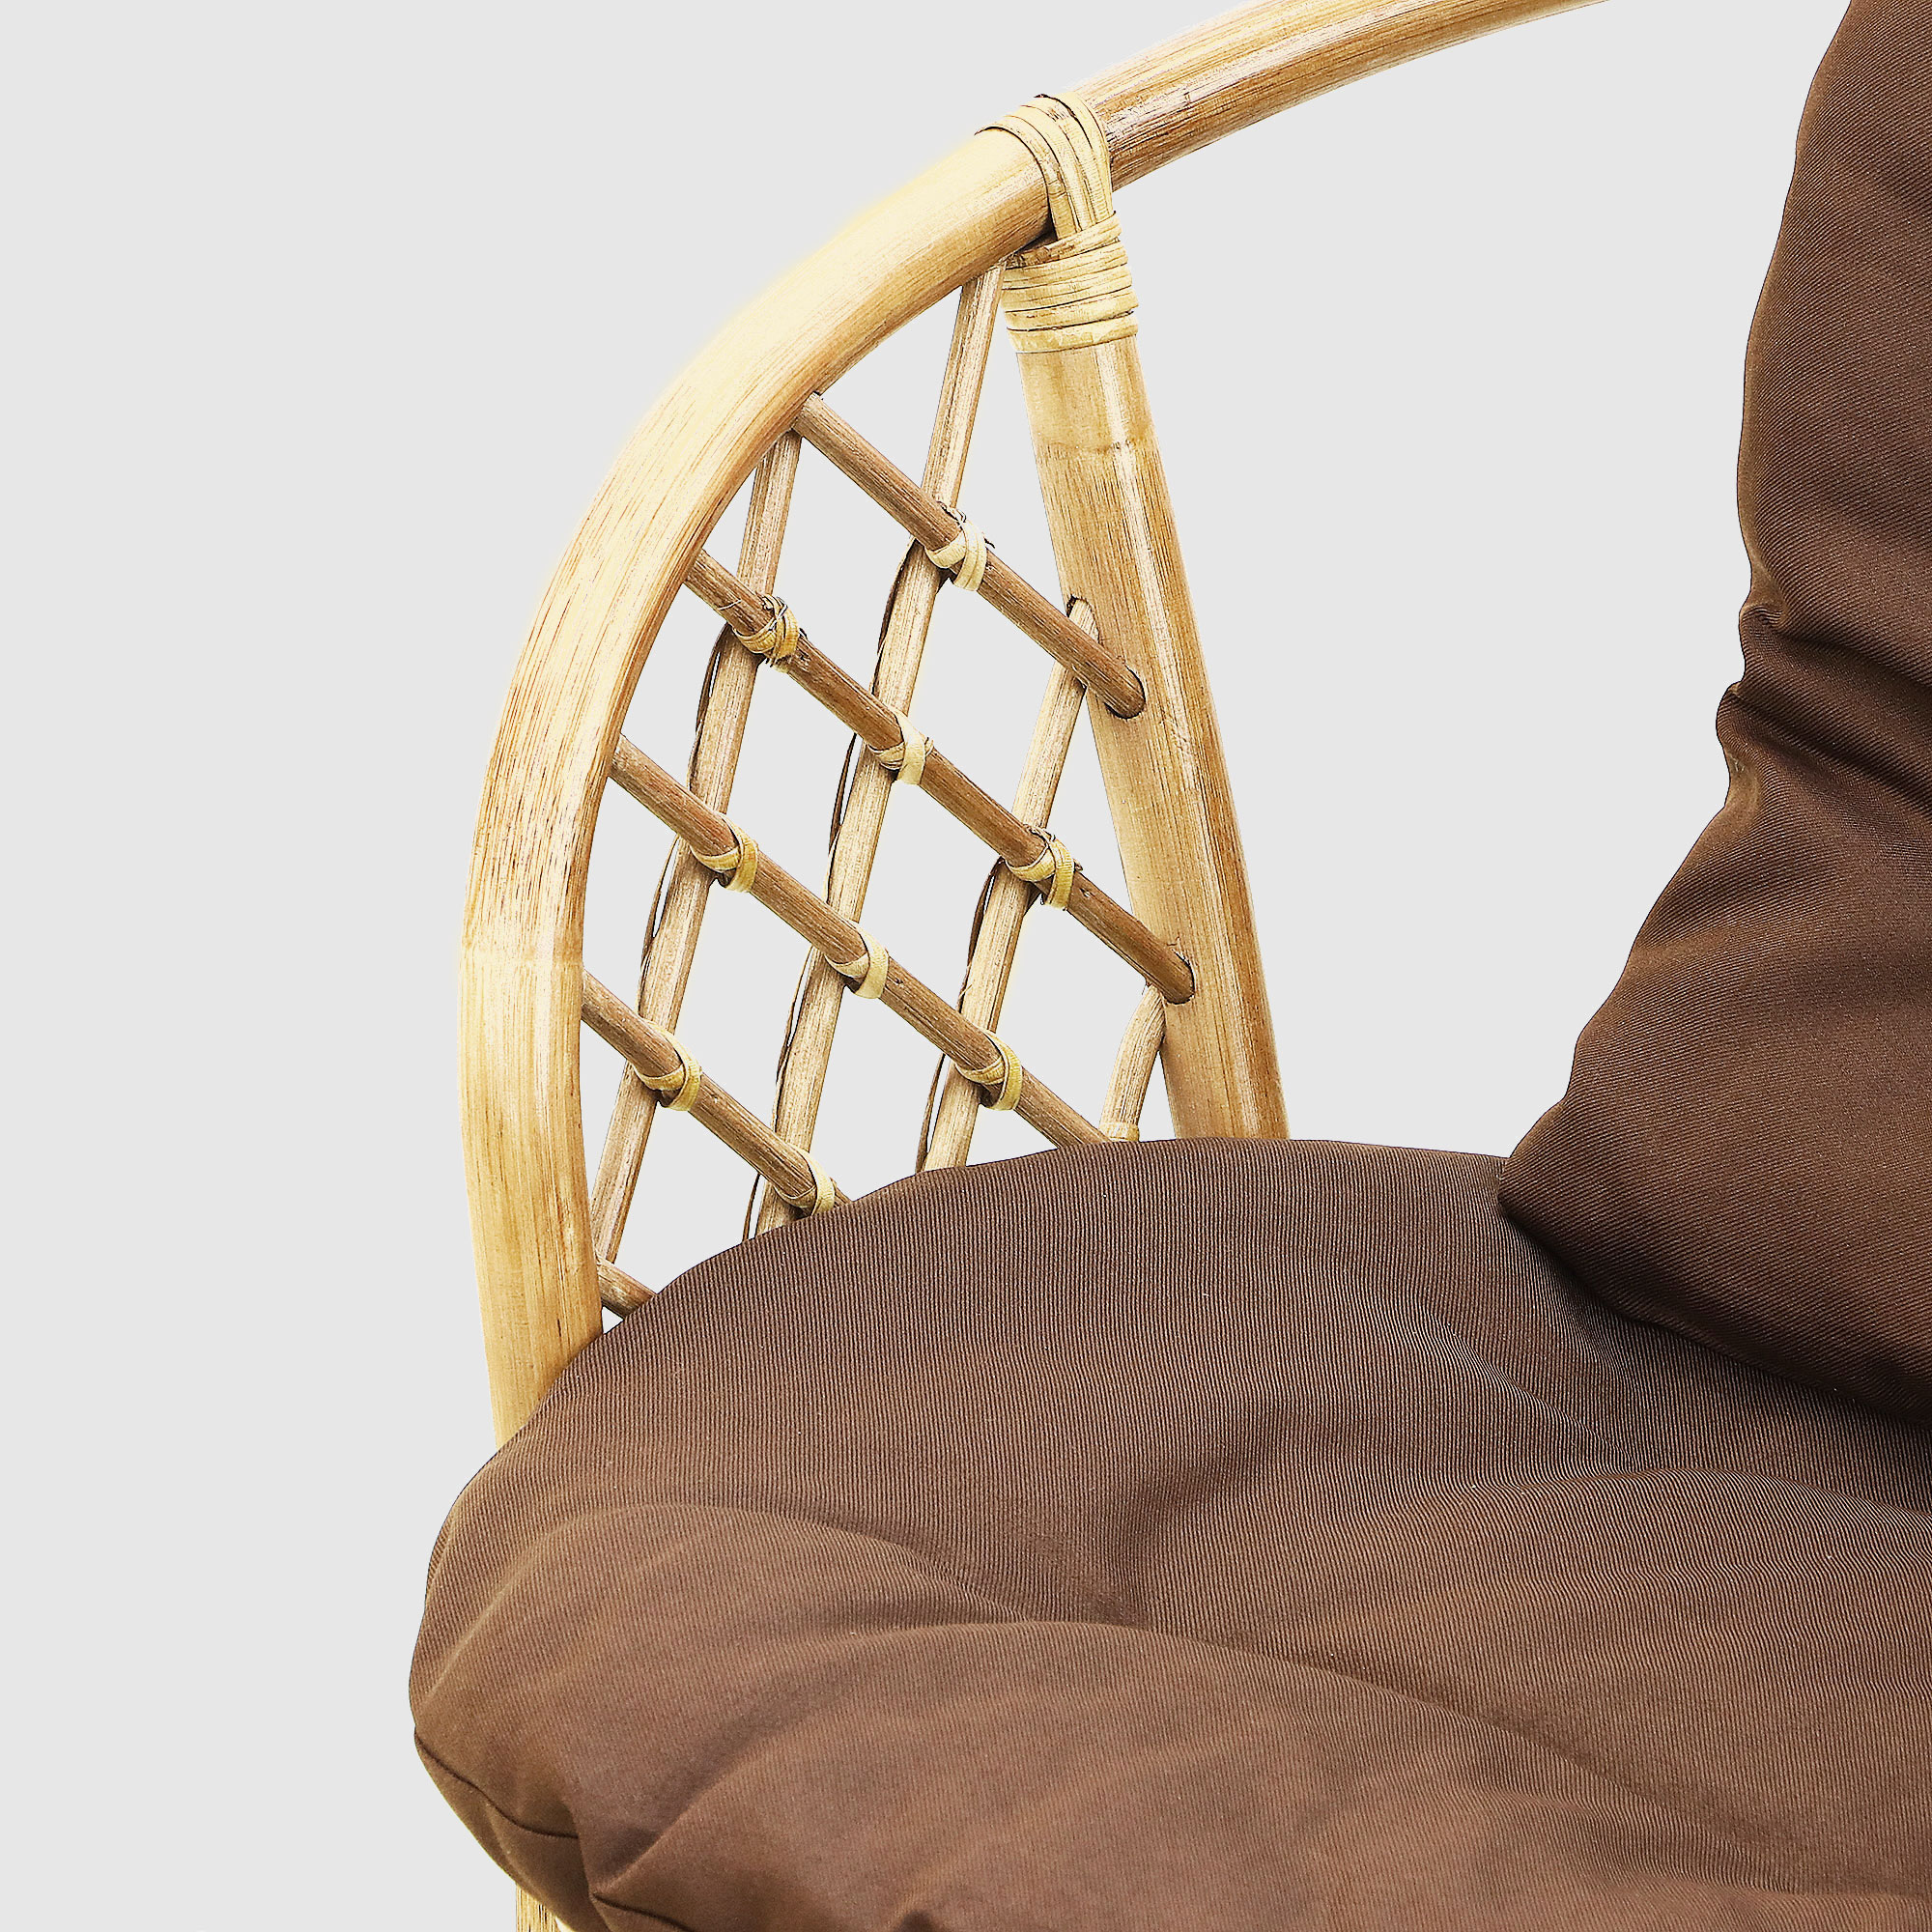 Комплект мебели Rattan grand toscana hon: диван, стол, 2 кресла, цвет светло-коричневый - фото 9